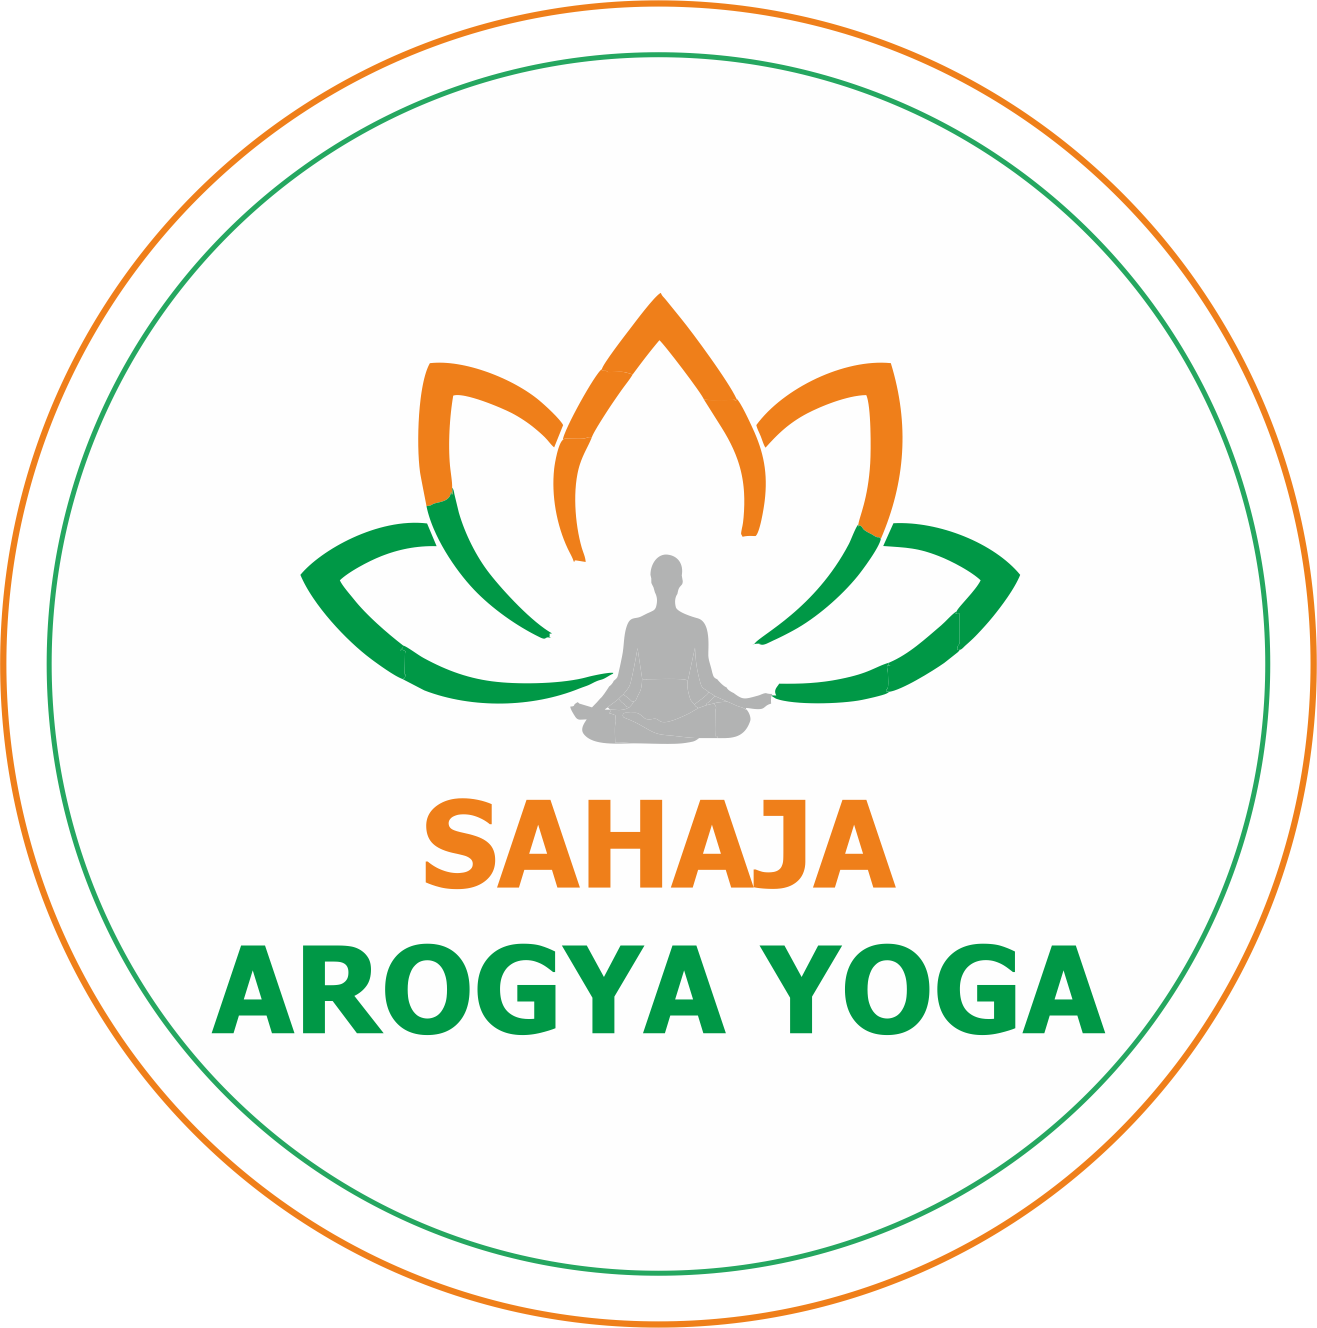 Sahaja Arogya Yoga